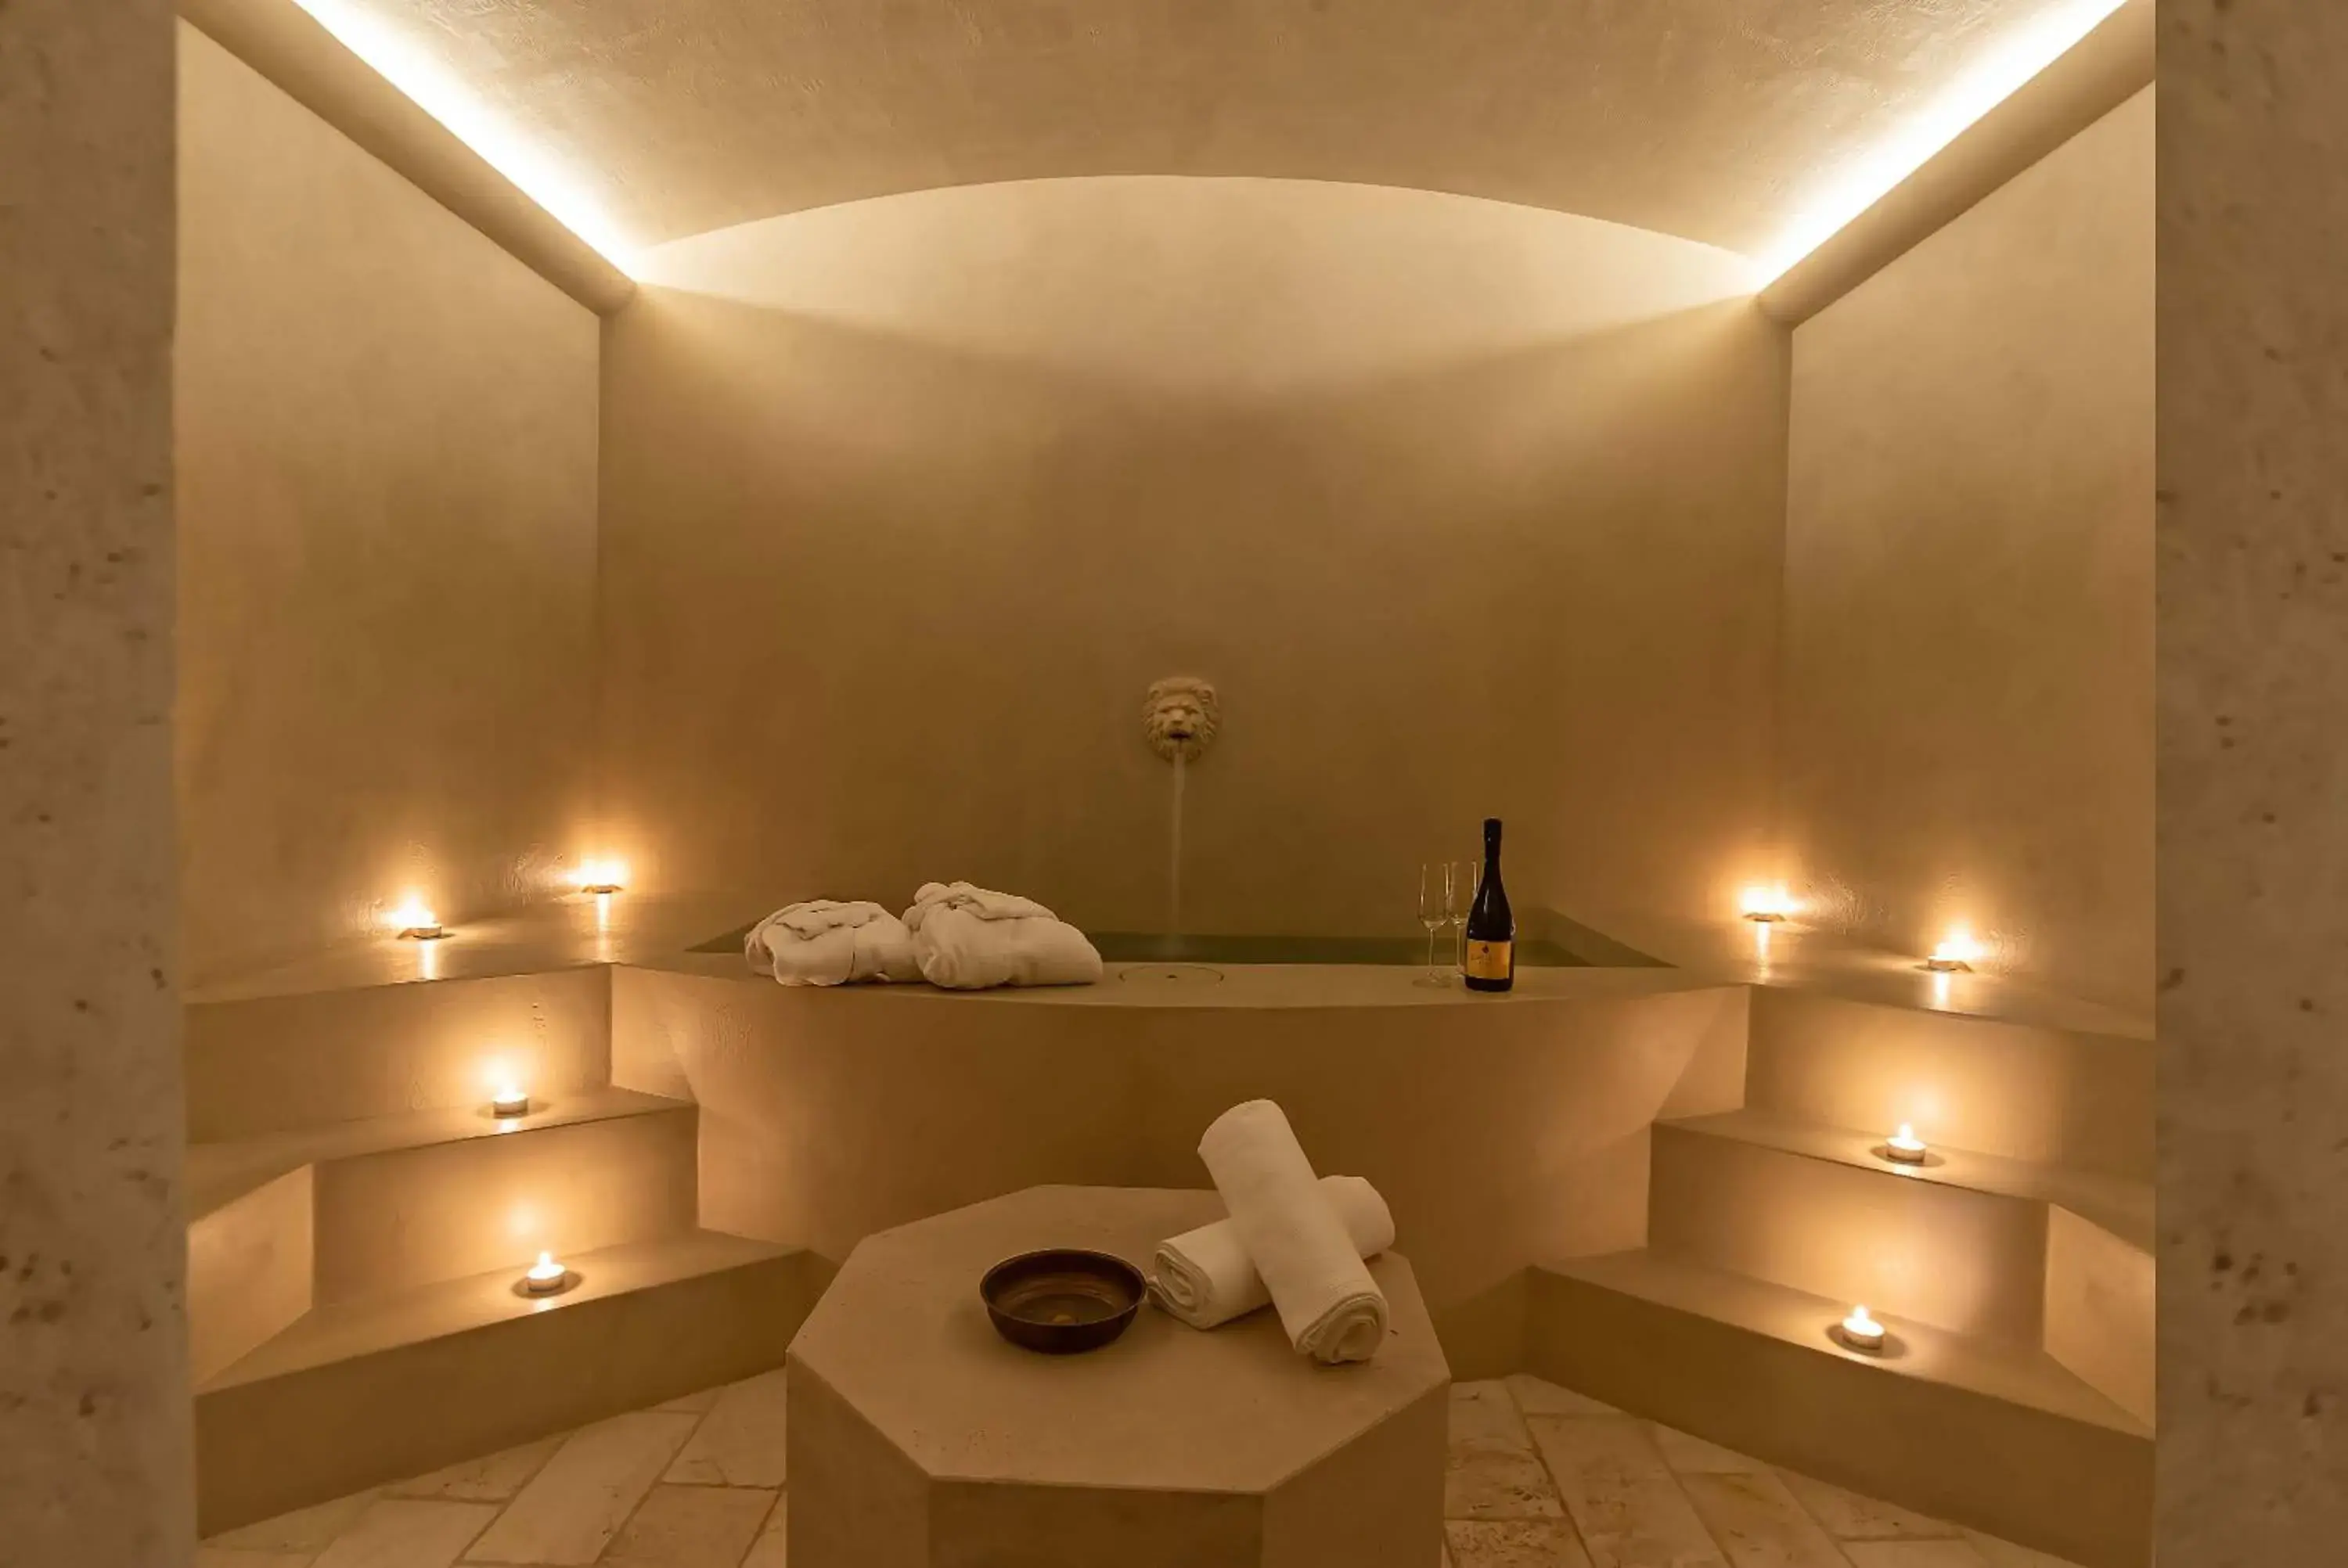 Spa and wellness centre/facilities, Bathroom in Villa Cassia di Baccano